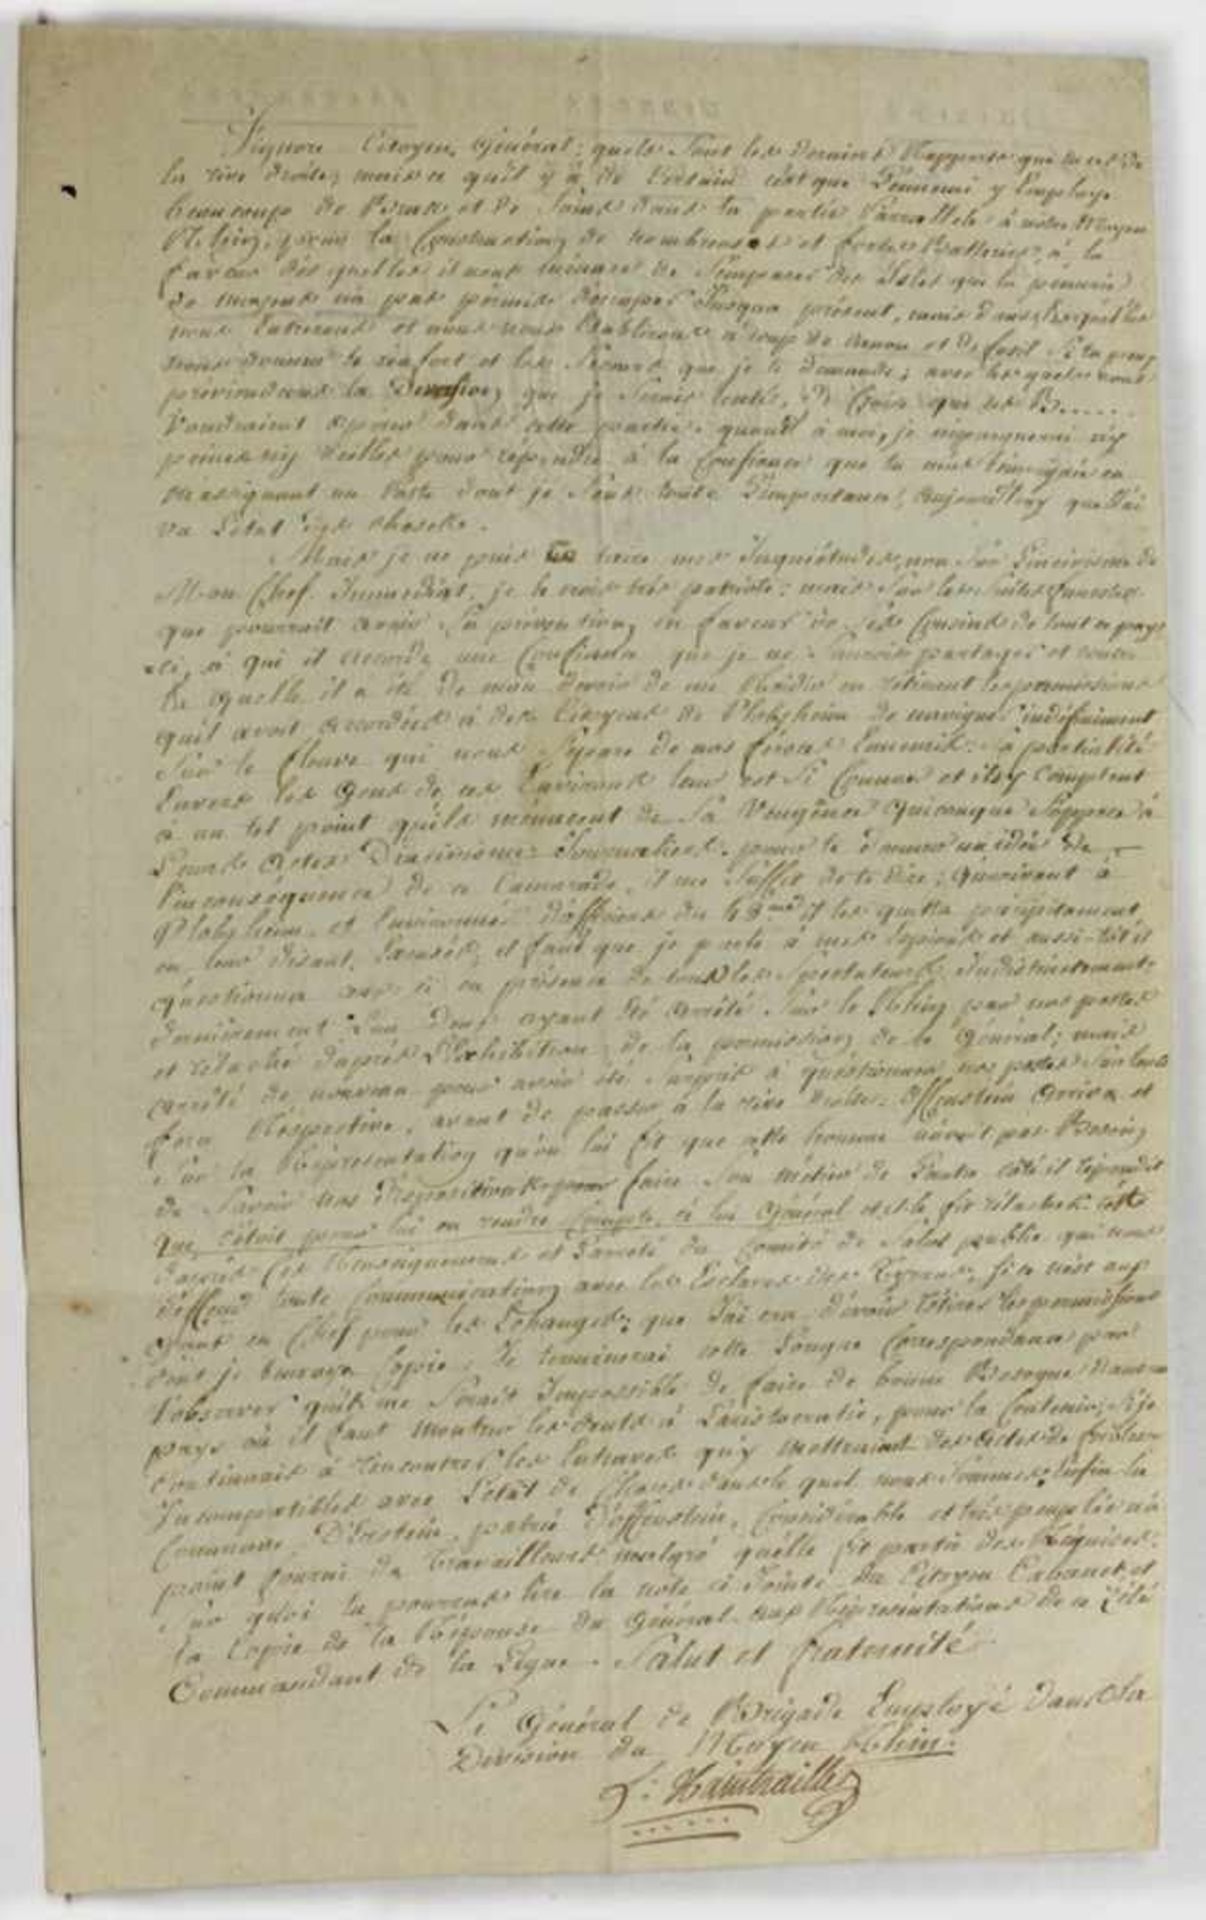 Historisches Dokument, Plobsheim, 1794, Brief des General Charles Antoine DominiqueXaintrailles - Bild 2 aus 3